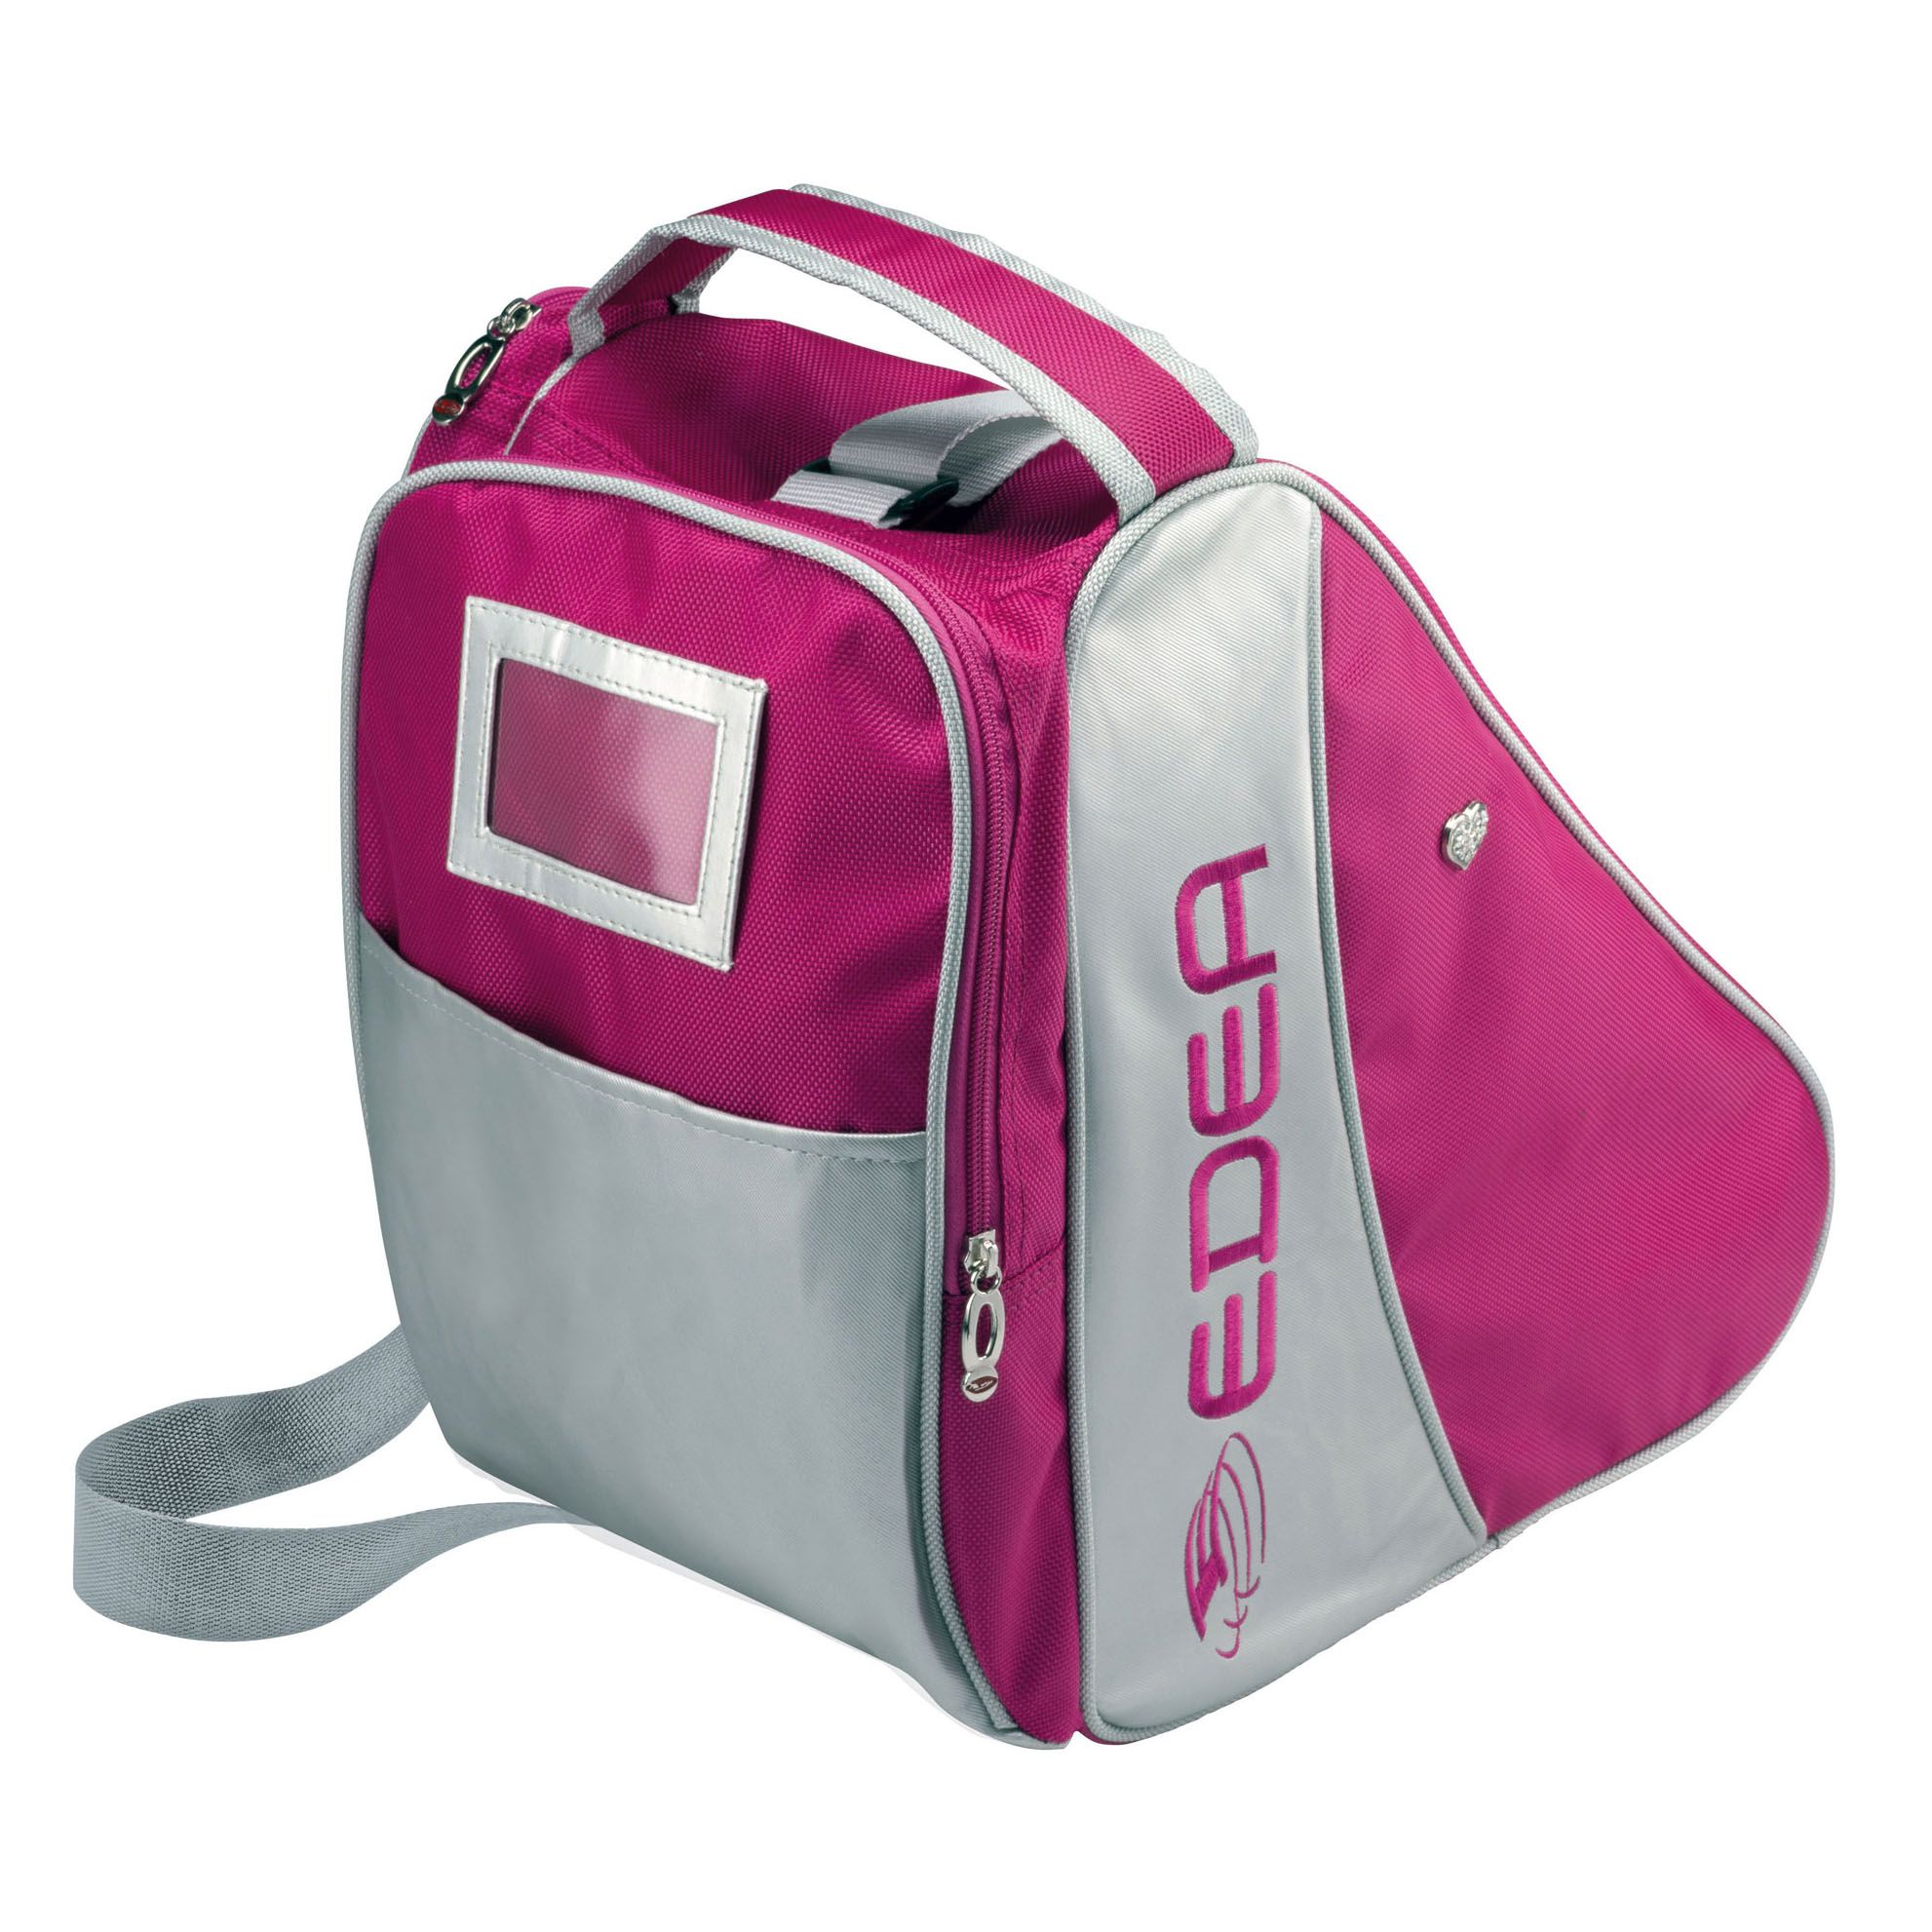 Сумка для коньков Edea Love bag (розовая)